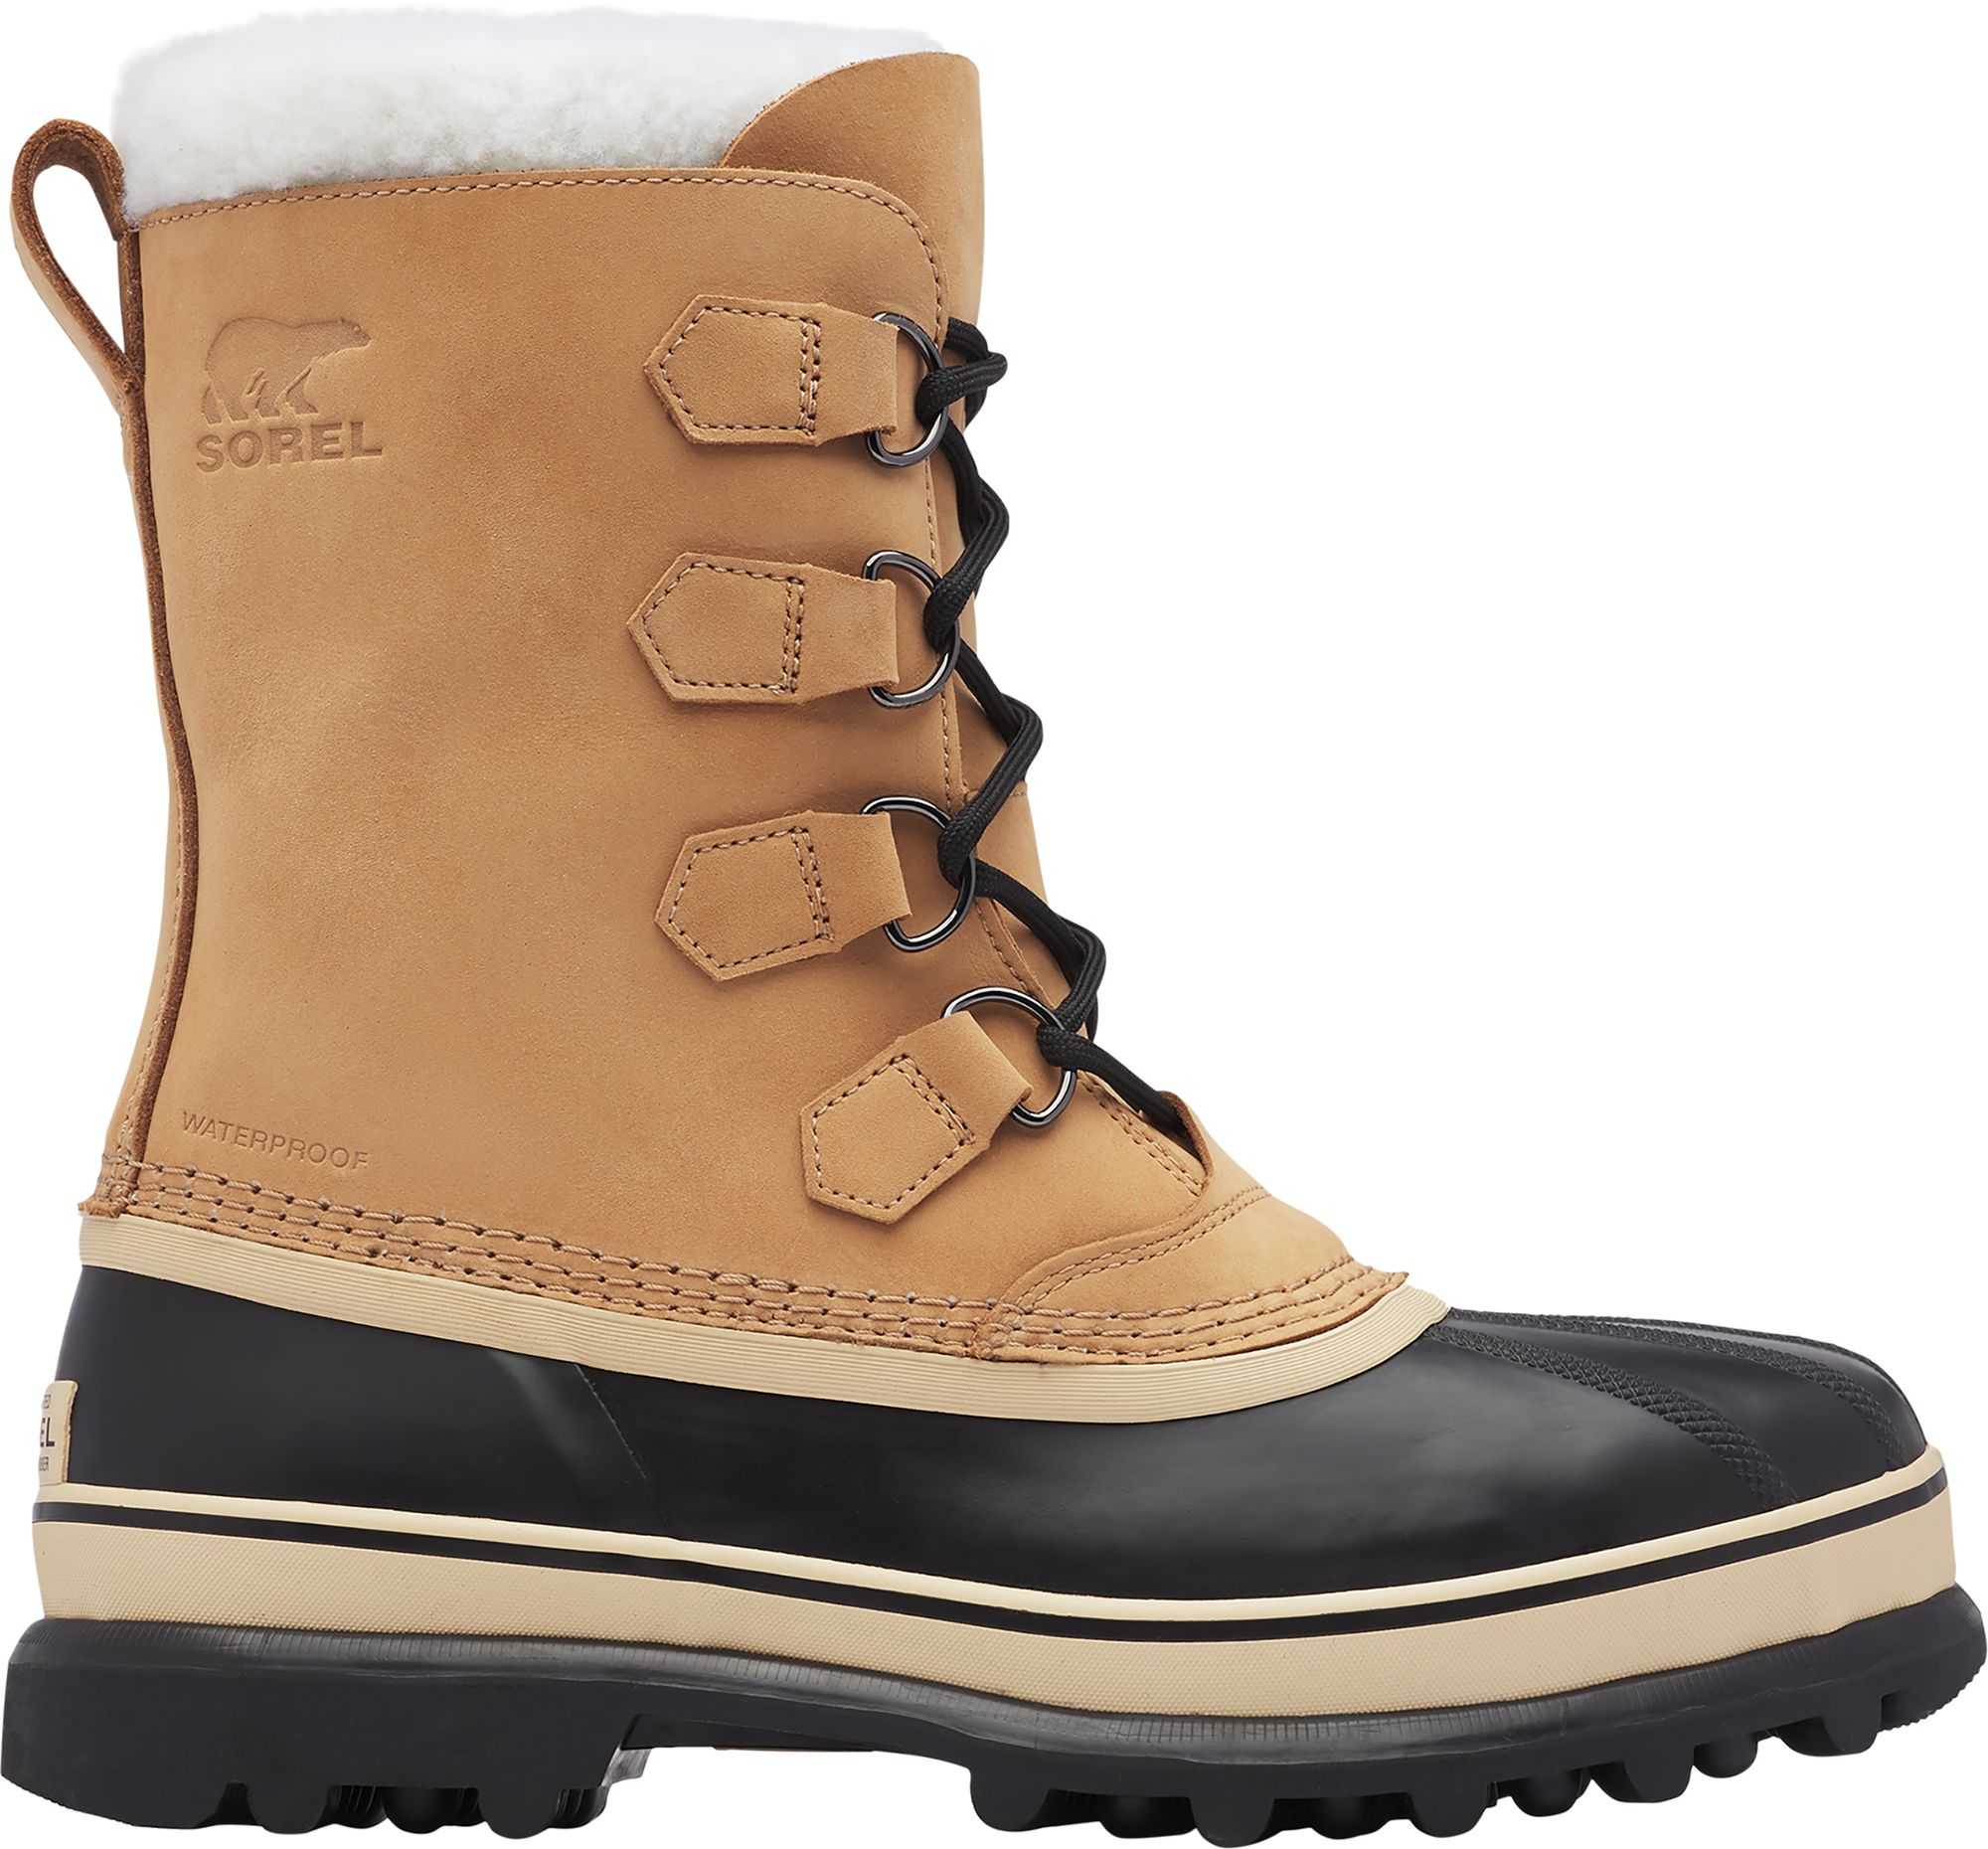 SOREL Men's Caribou Waterproof Winter Boots, Size 12, Buff